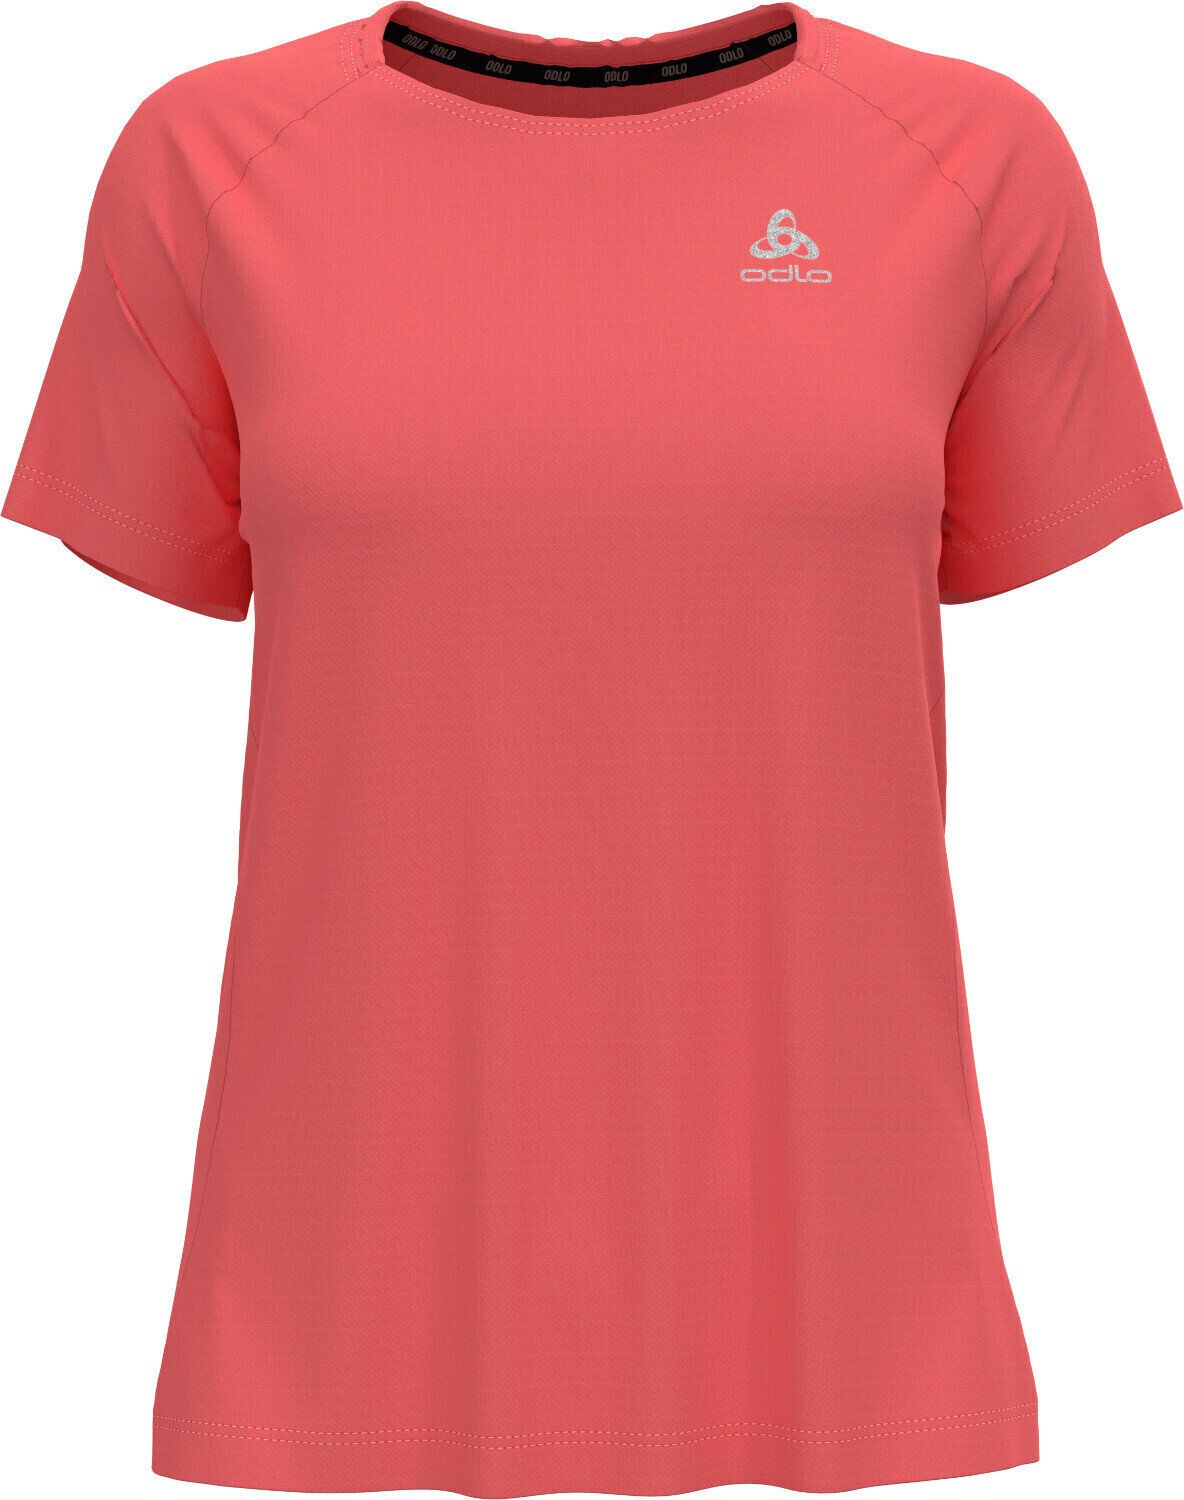 Majica za trčanje s kratkim rukavom
 Odlo Essential T-Shirt Siesta XS Majica za trčanje s kratkim rukavom